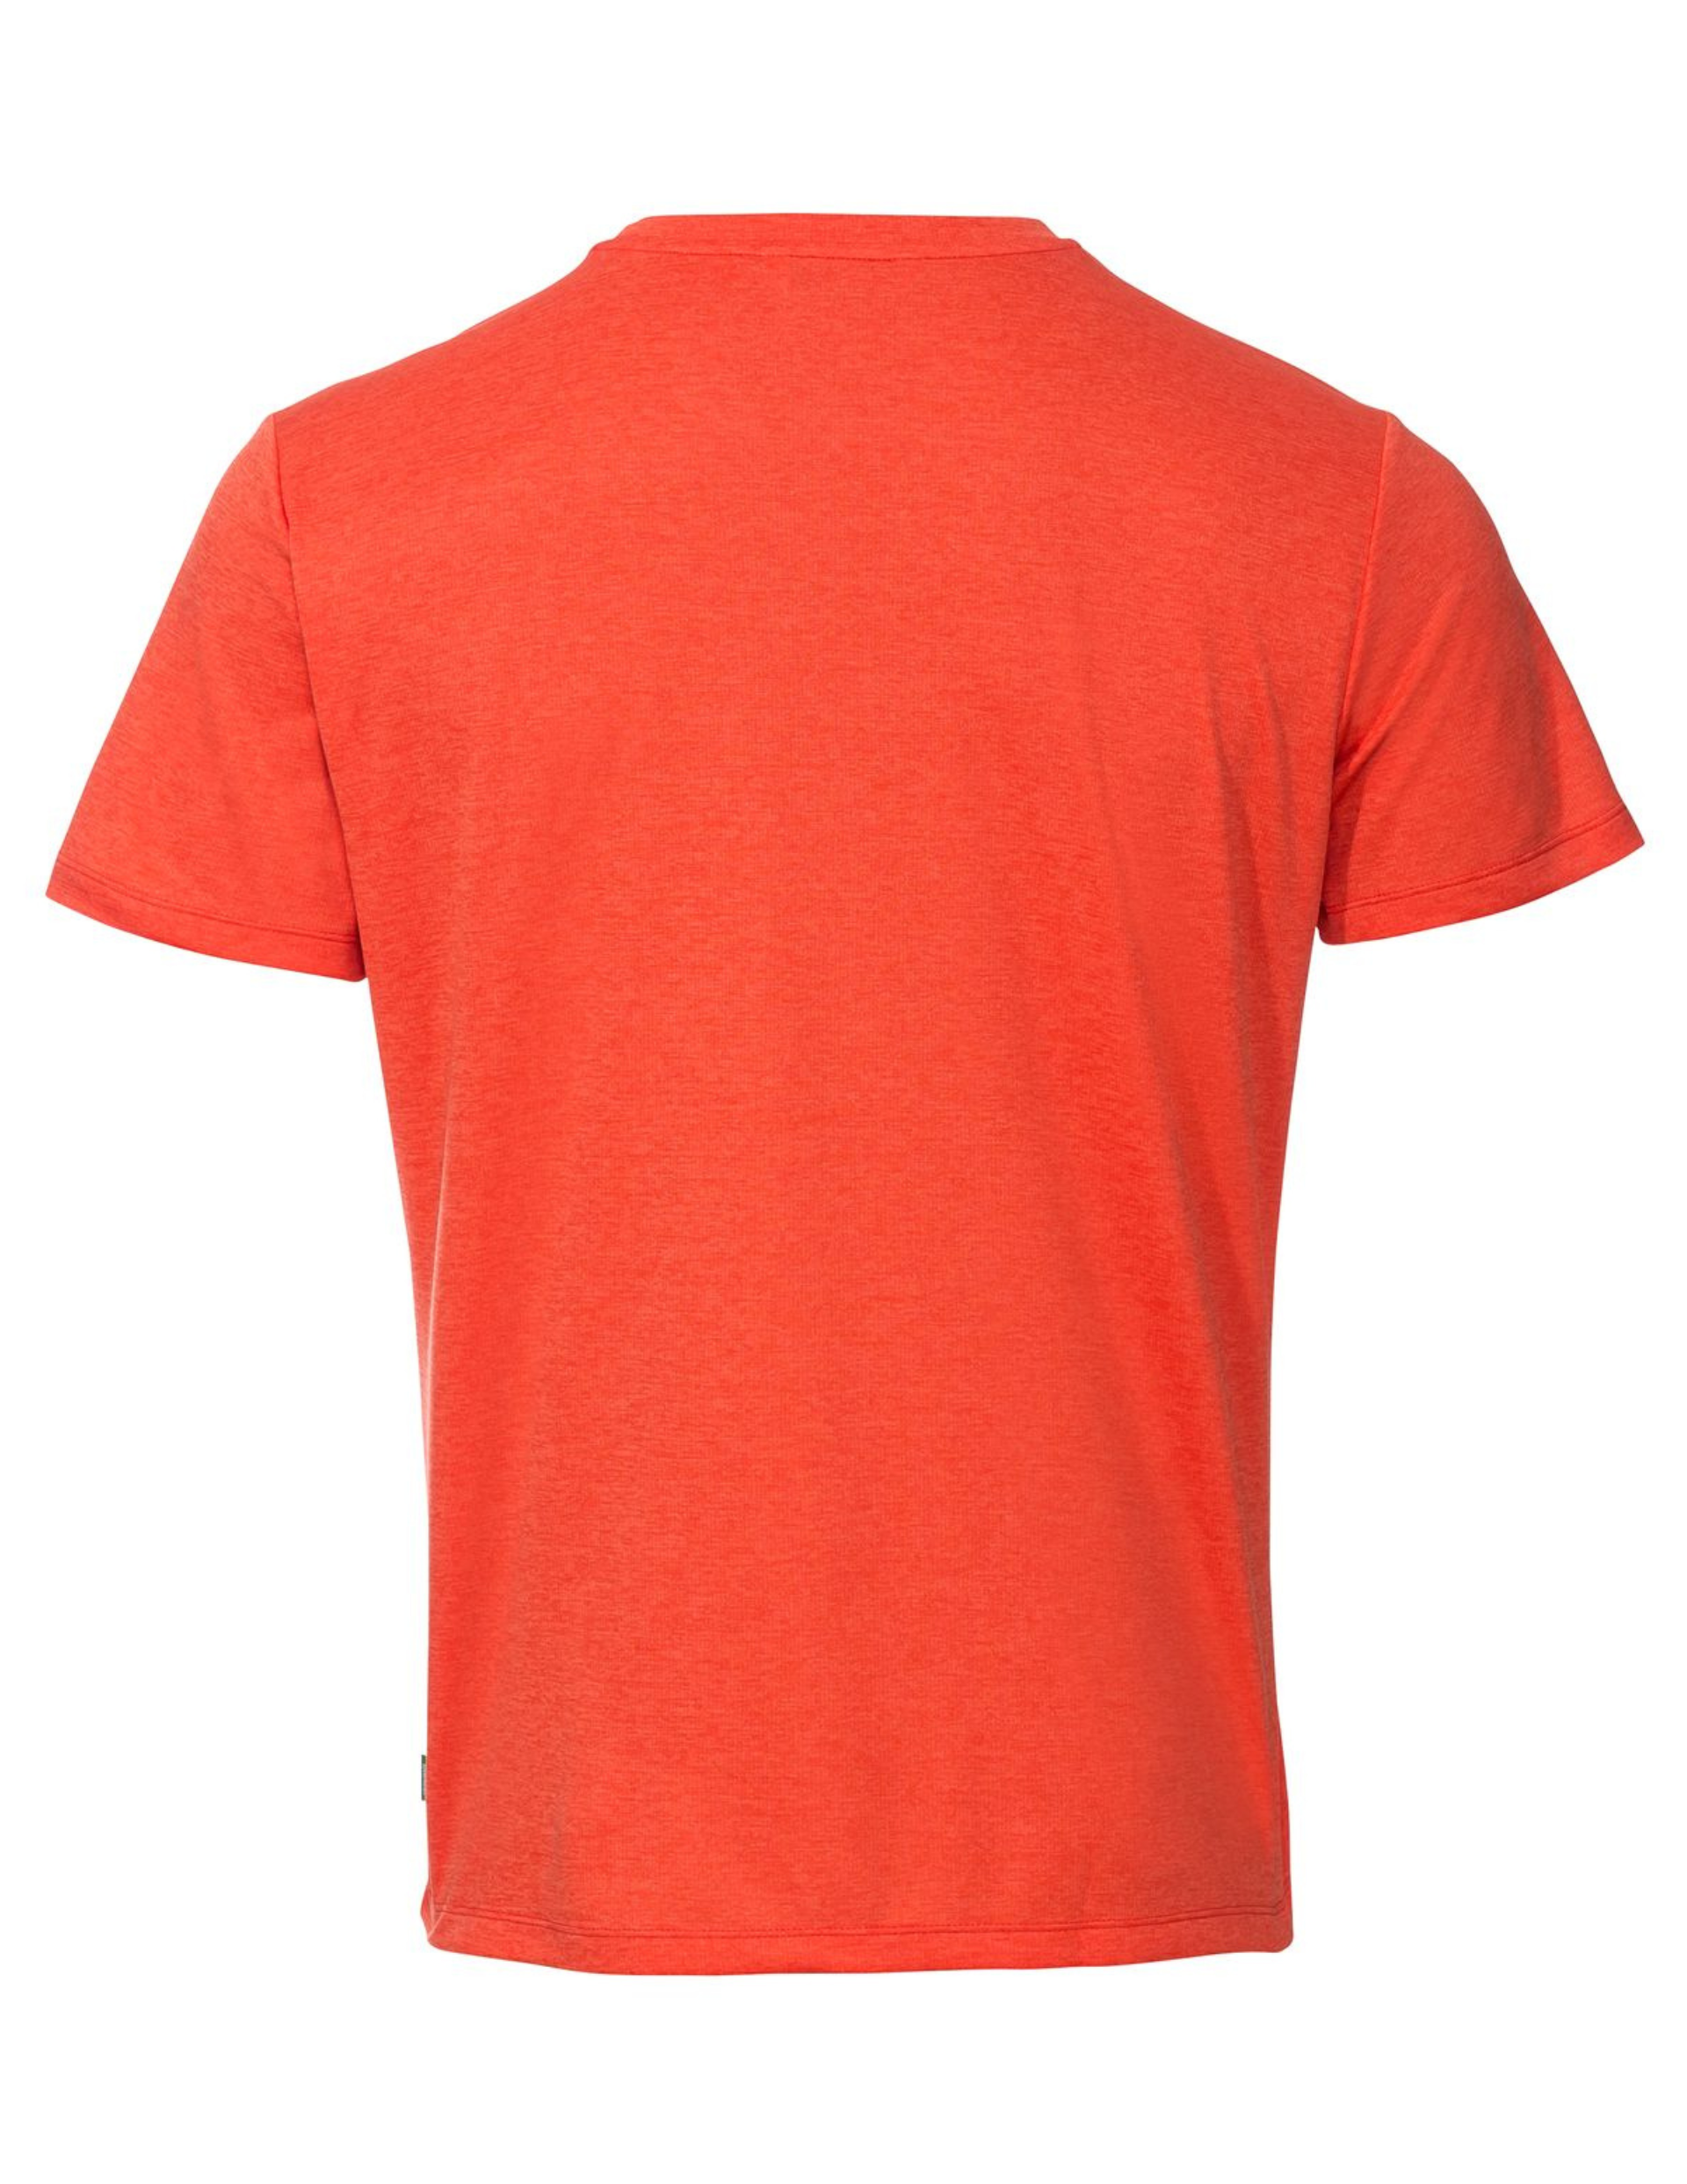 T-Shirt de Rando Vaude Essential Manches Courtes Homme